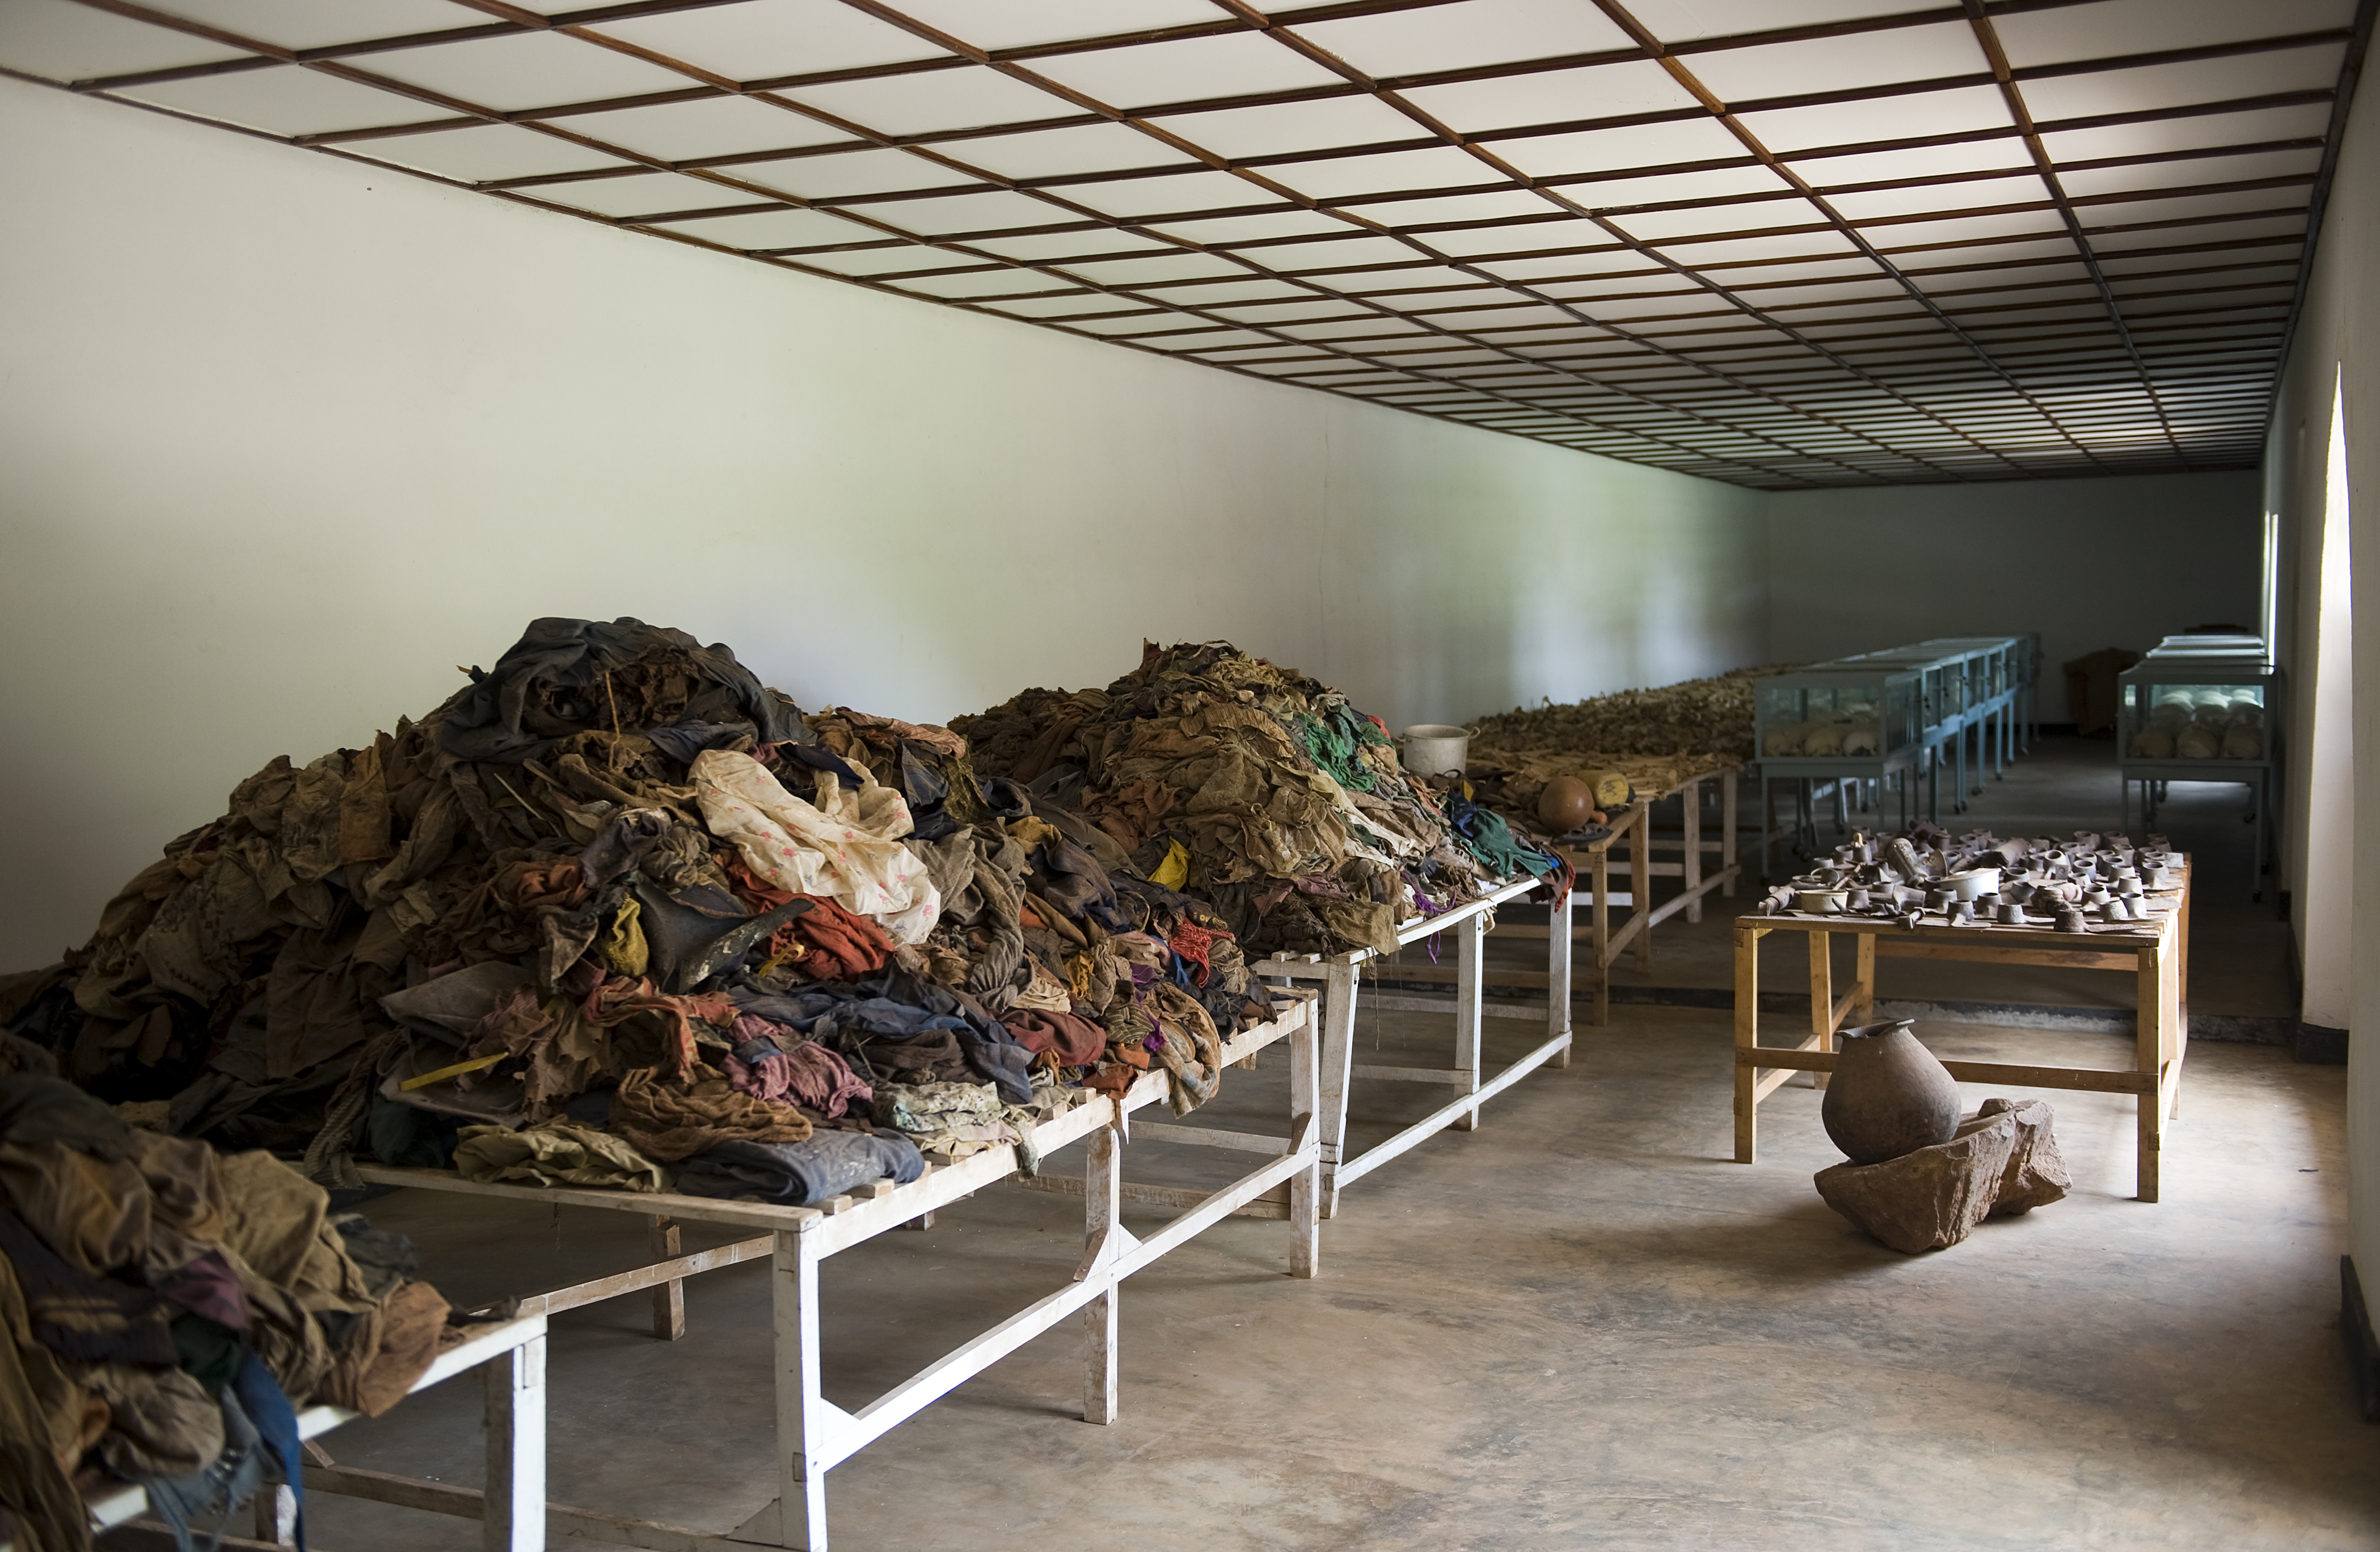 Nyarubuye Genocide Memorial Site | Neza SAFARIS